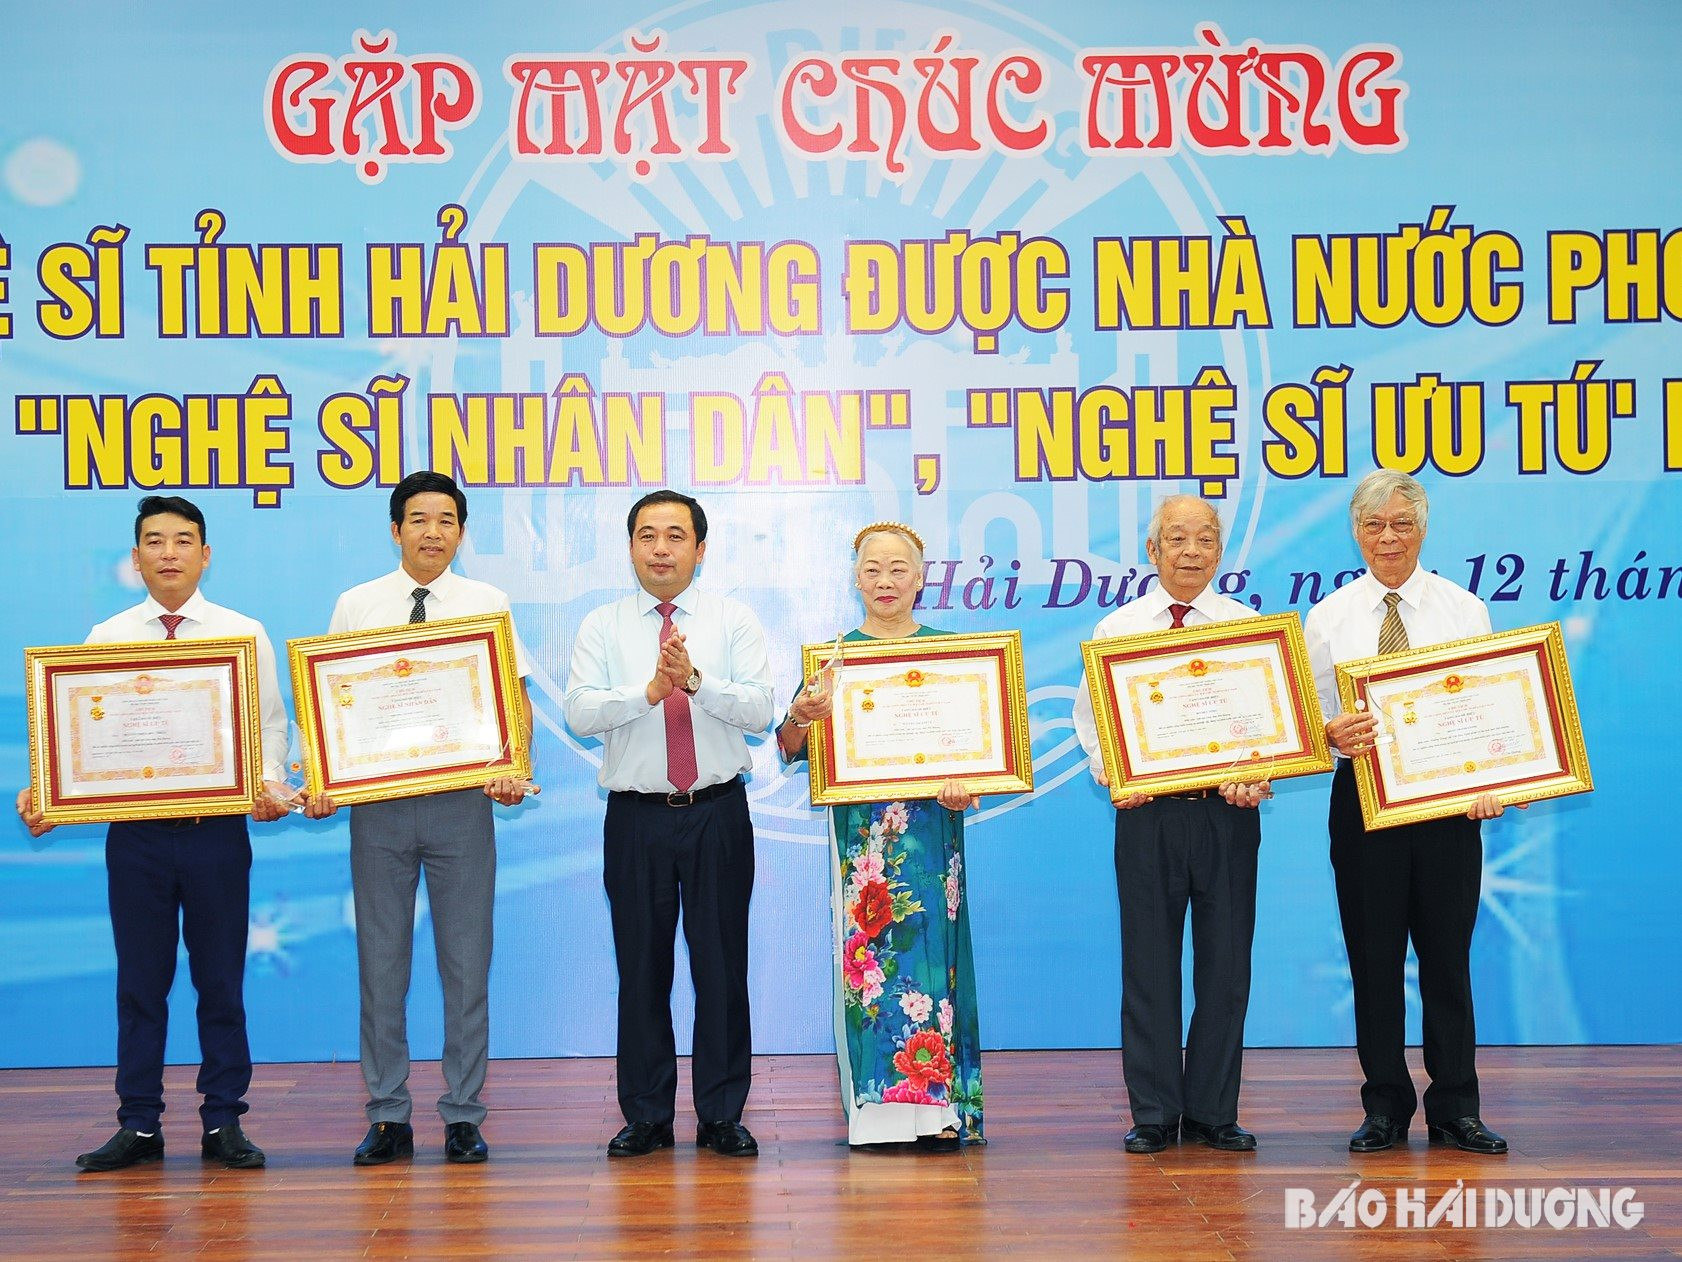 Thừa ủy quyền Chủ tịch nước, đồng chí Trần Đức Thắng, Ủy viên Trung ương Đảng, Bí thư Tỉnh ủy Hải Dương trao danh hiệu cho các Nghệ sĩ Nhân dân và Nghệ sĩ Ưu tú của Hải Dương